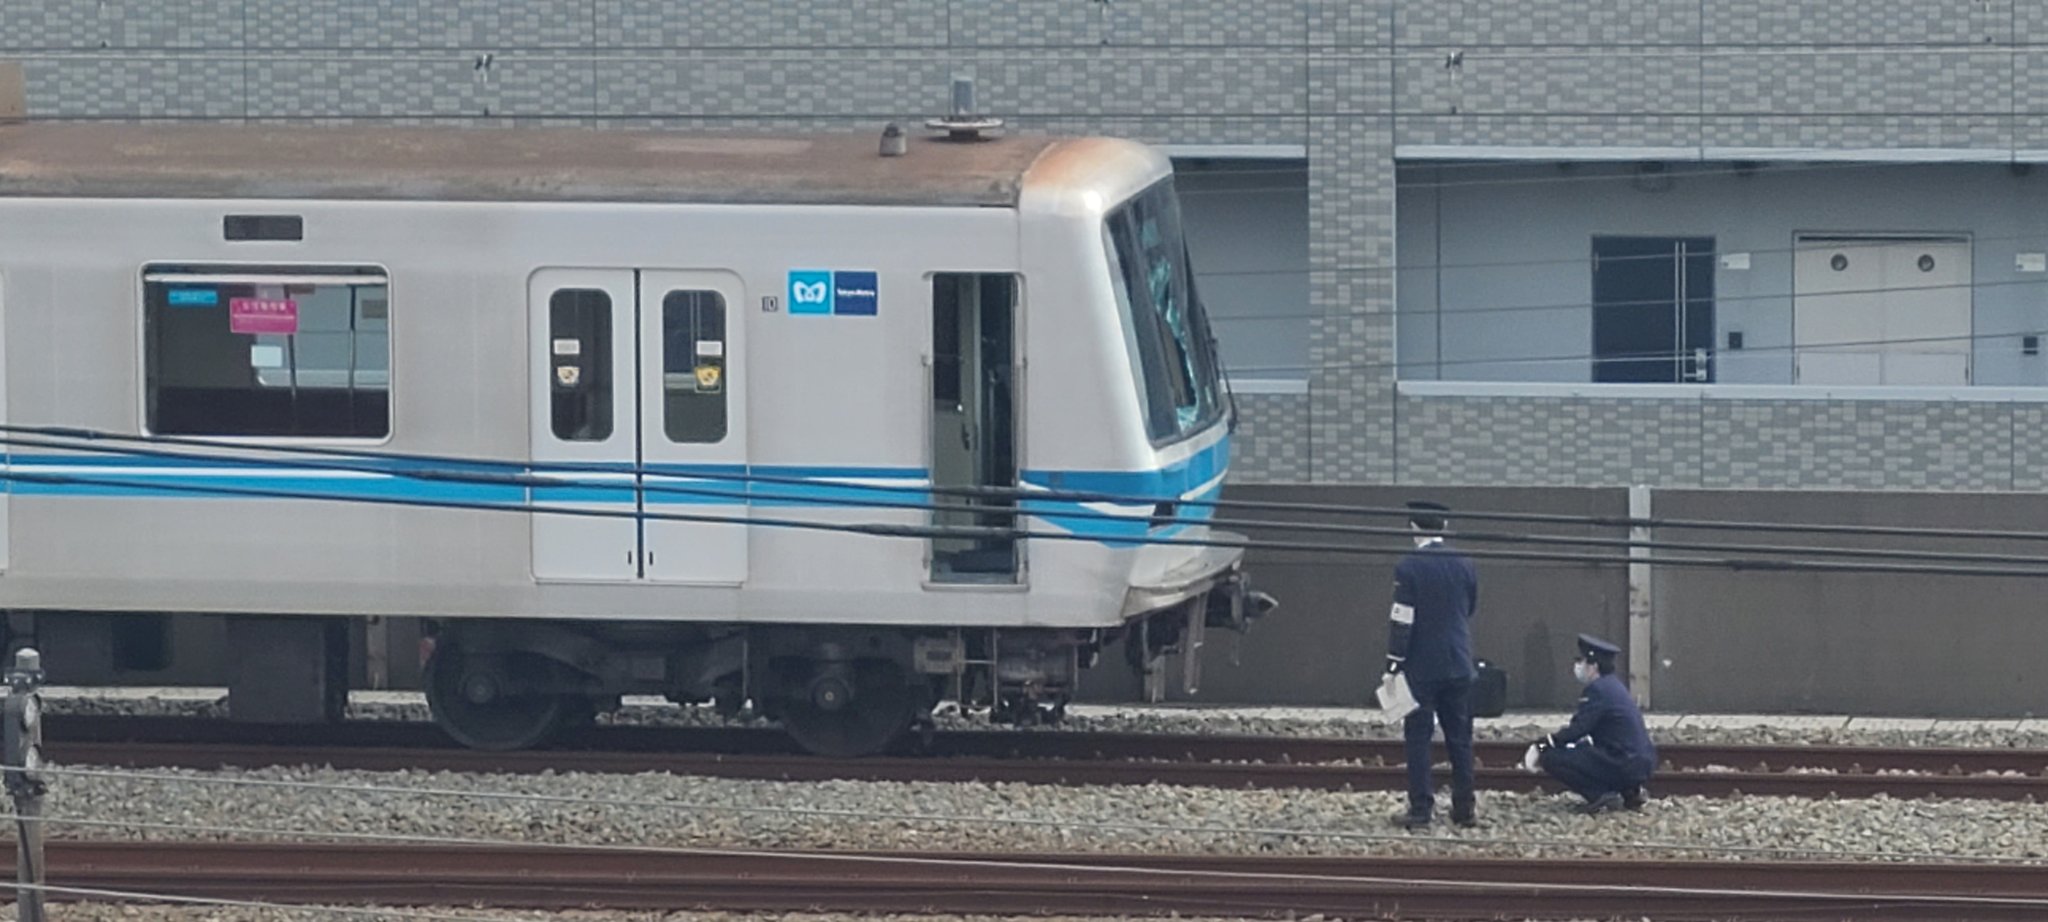 東京メトロ東西線で妙典駅で人身事故「電車の下に人が巻き込まれている」大混雑も